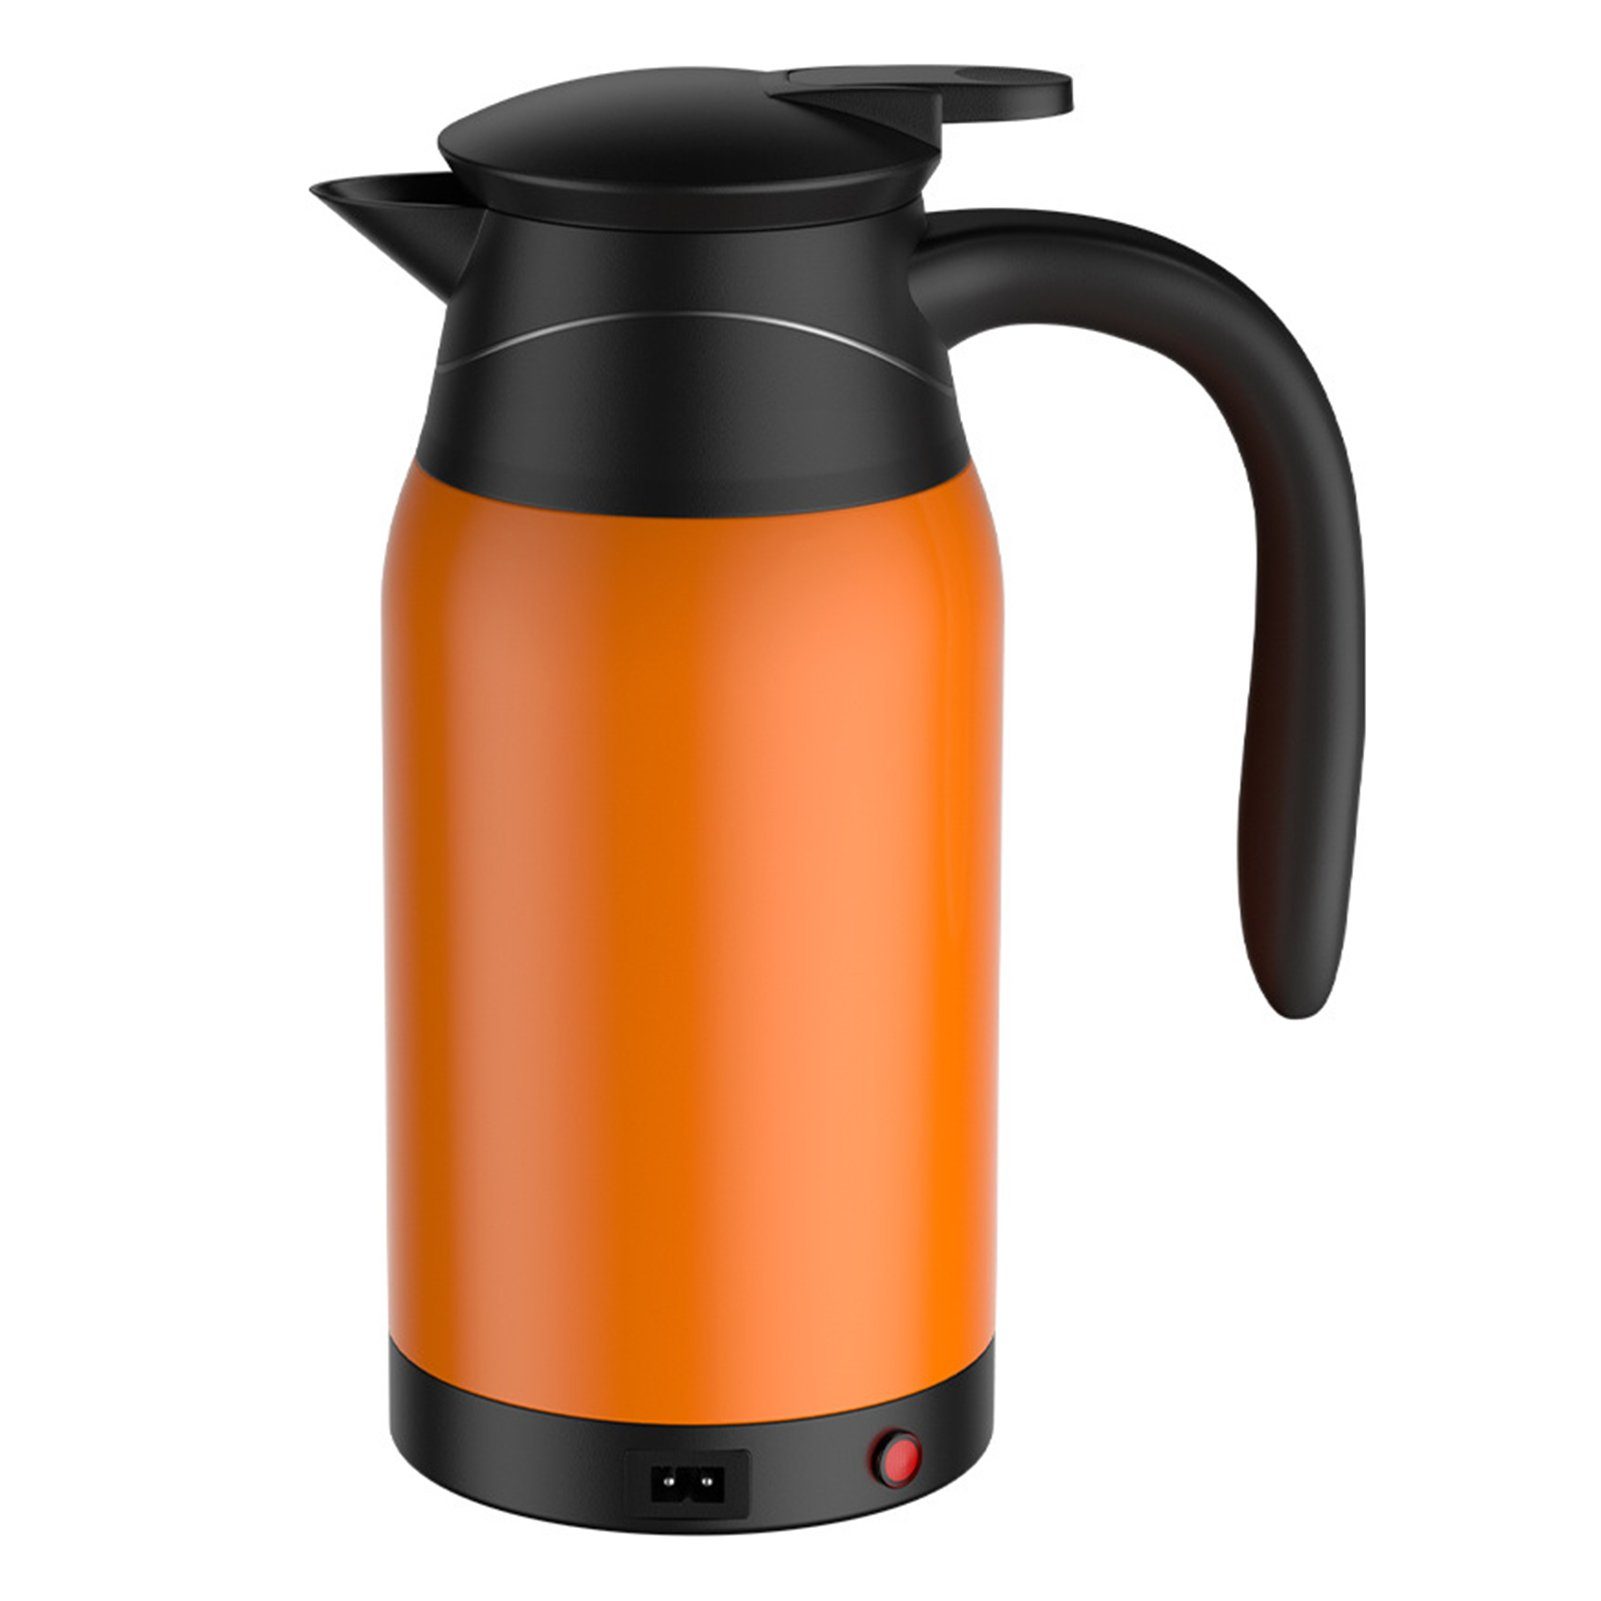 Edelstahl Wasserkocher Kaffee Elektrischer Wasserkocher Getränke für Wasser Auto Orange Heizung, Rutaqian